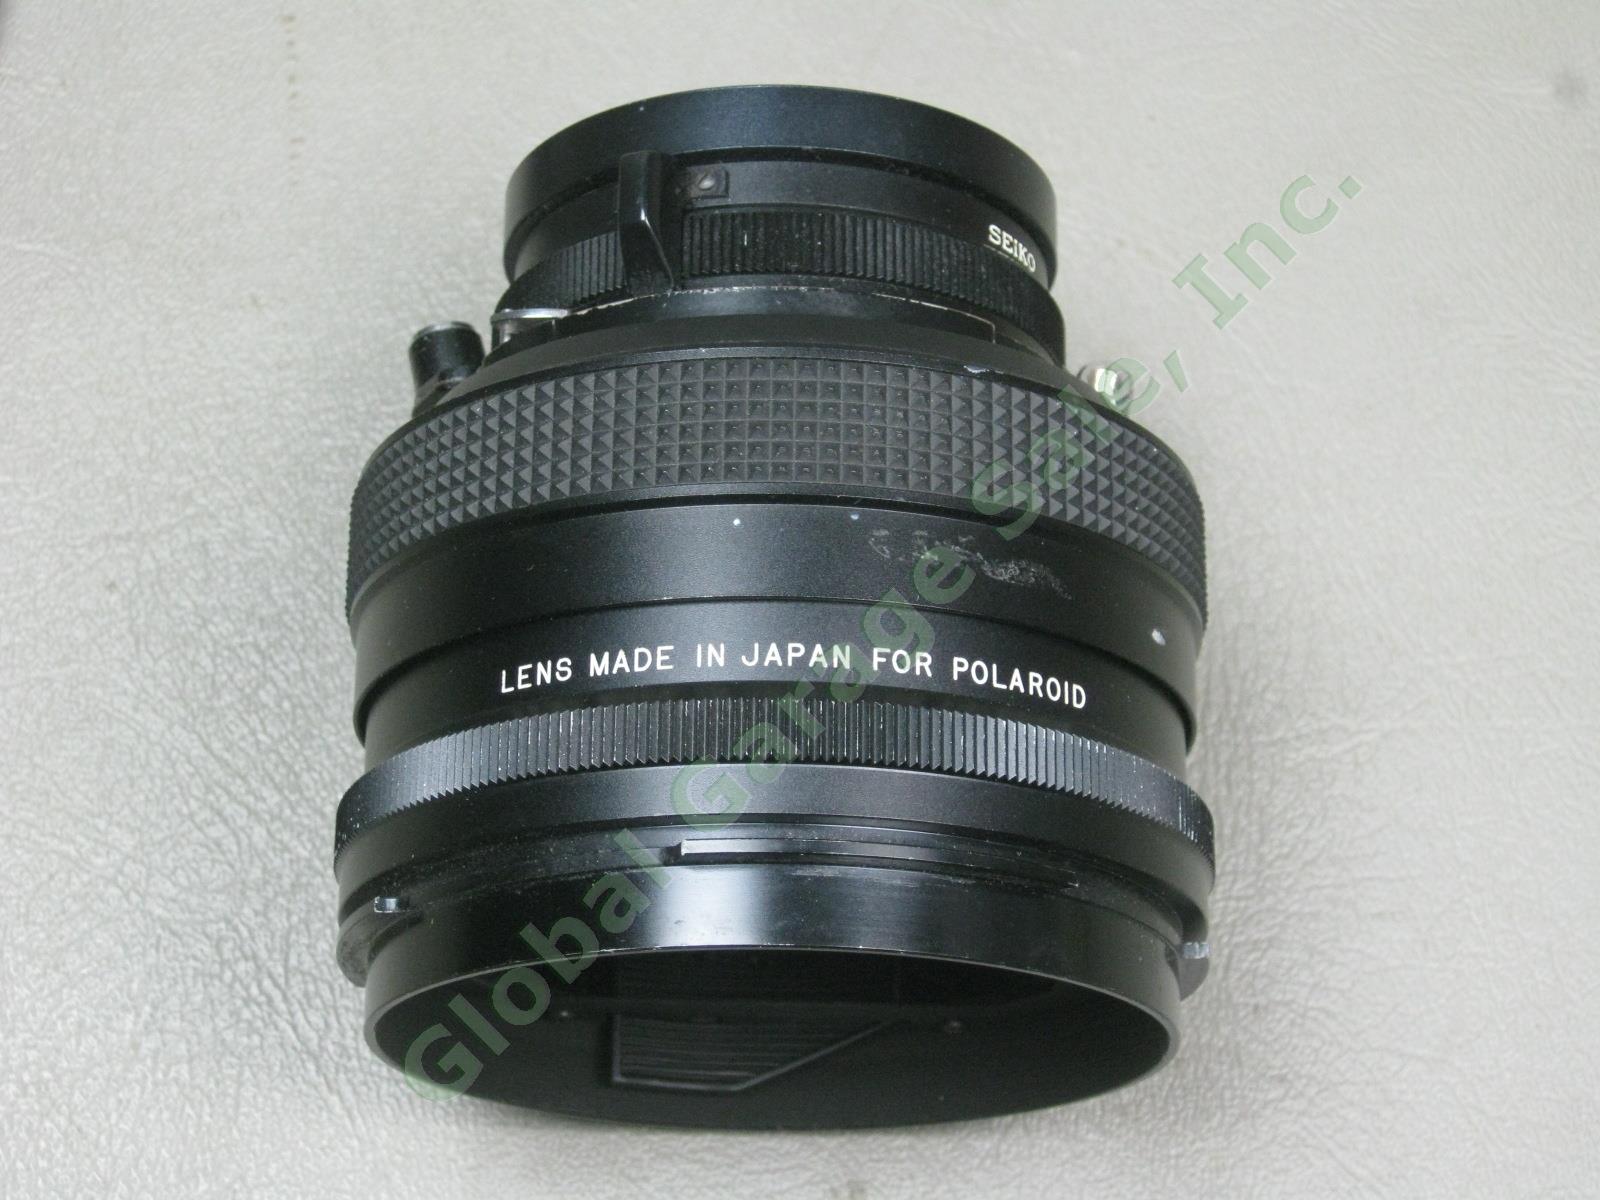 Mamiya 127mm f/4.7 Lens for Super 23 Universal Press Cameras MIJ for Polaroid NR 1